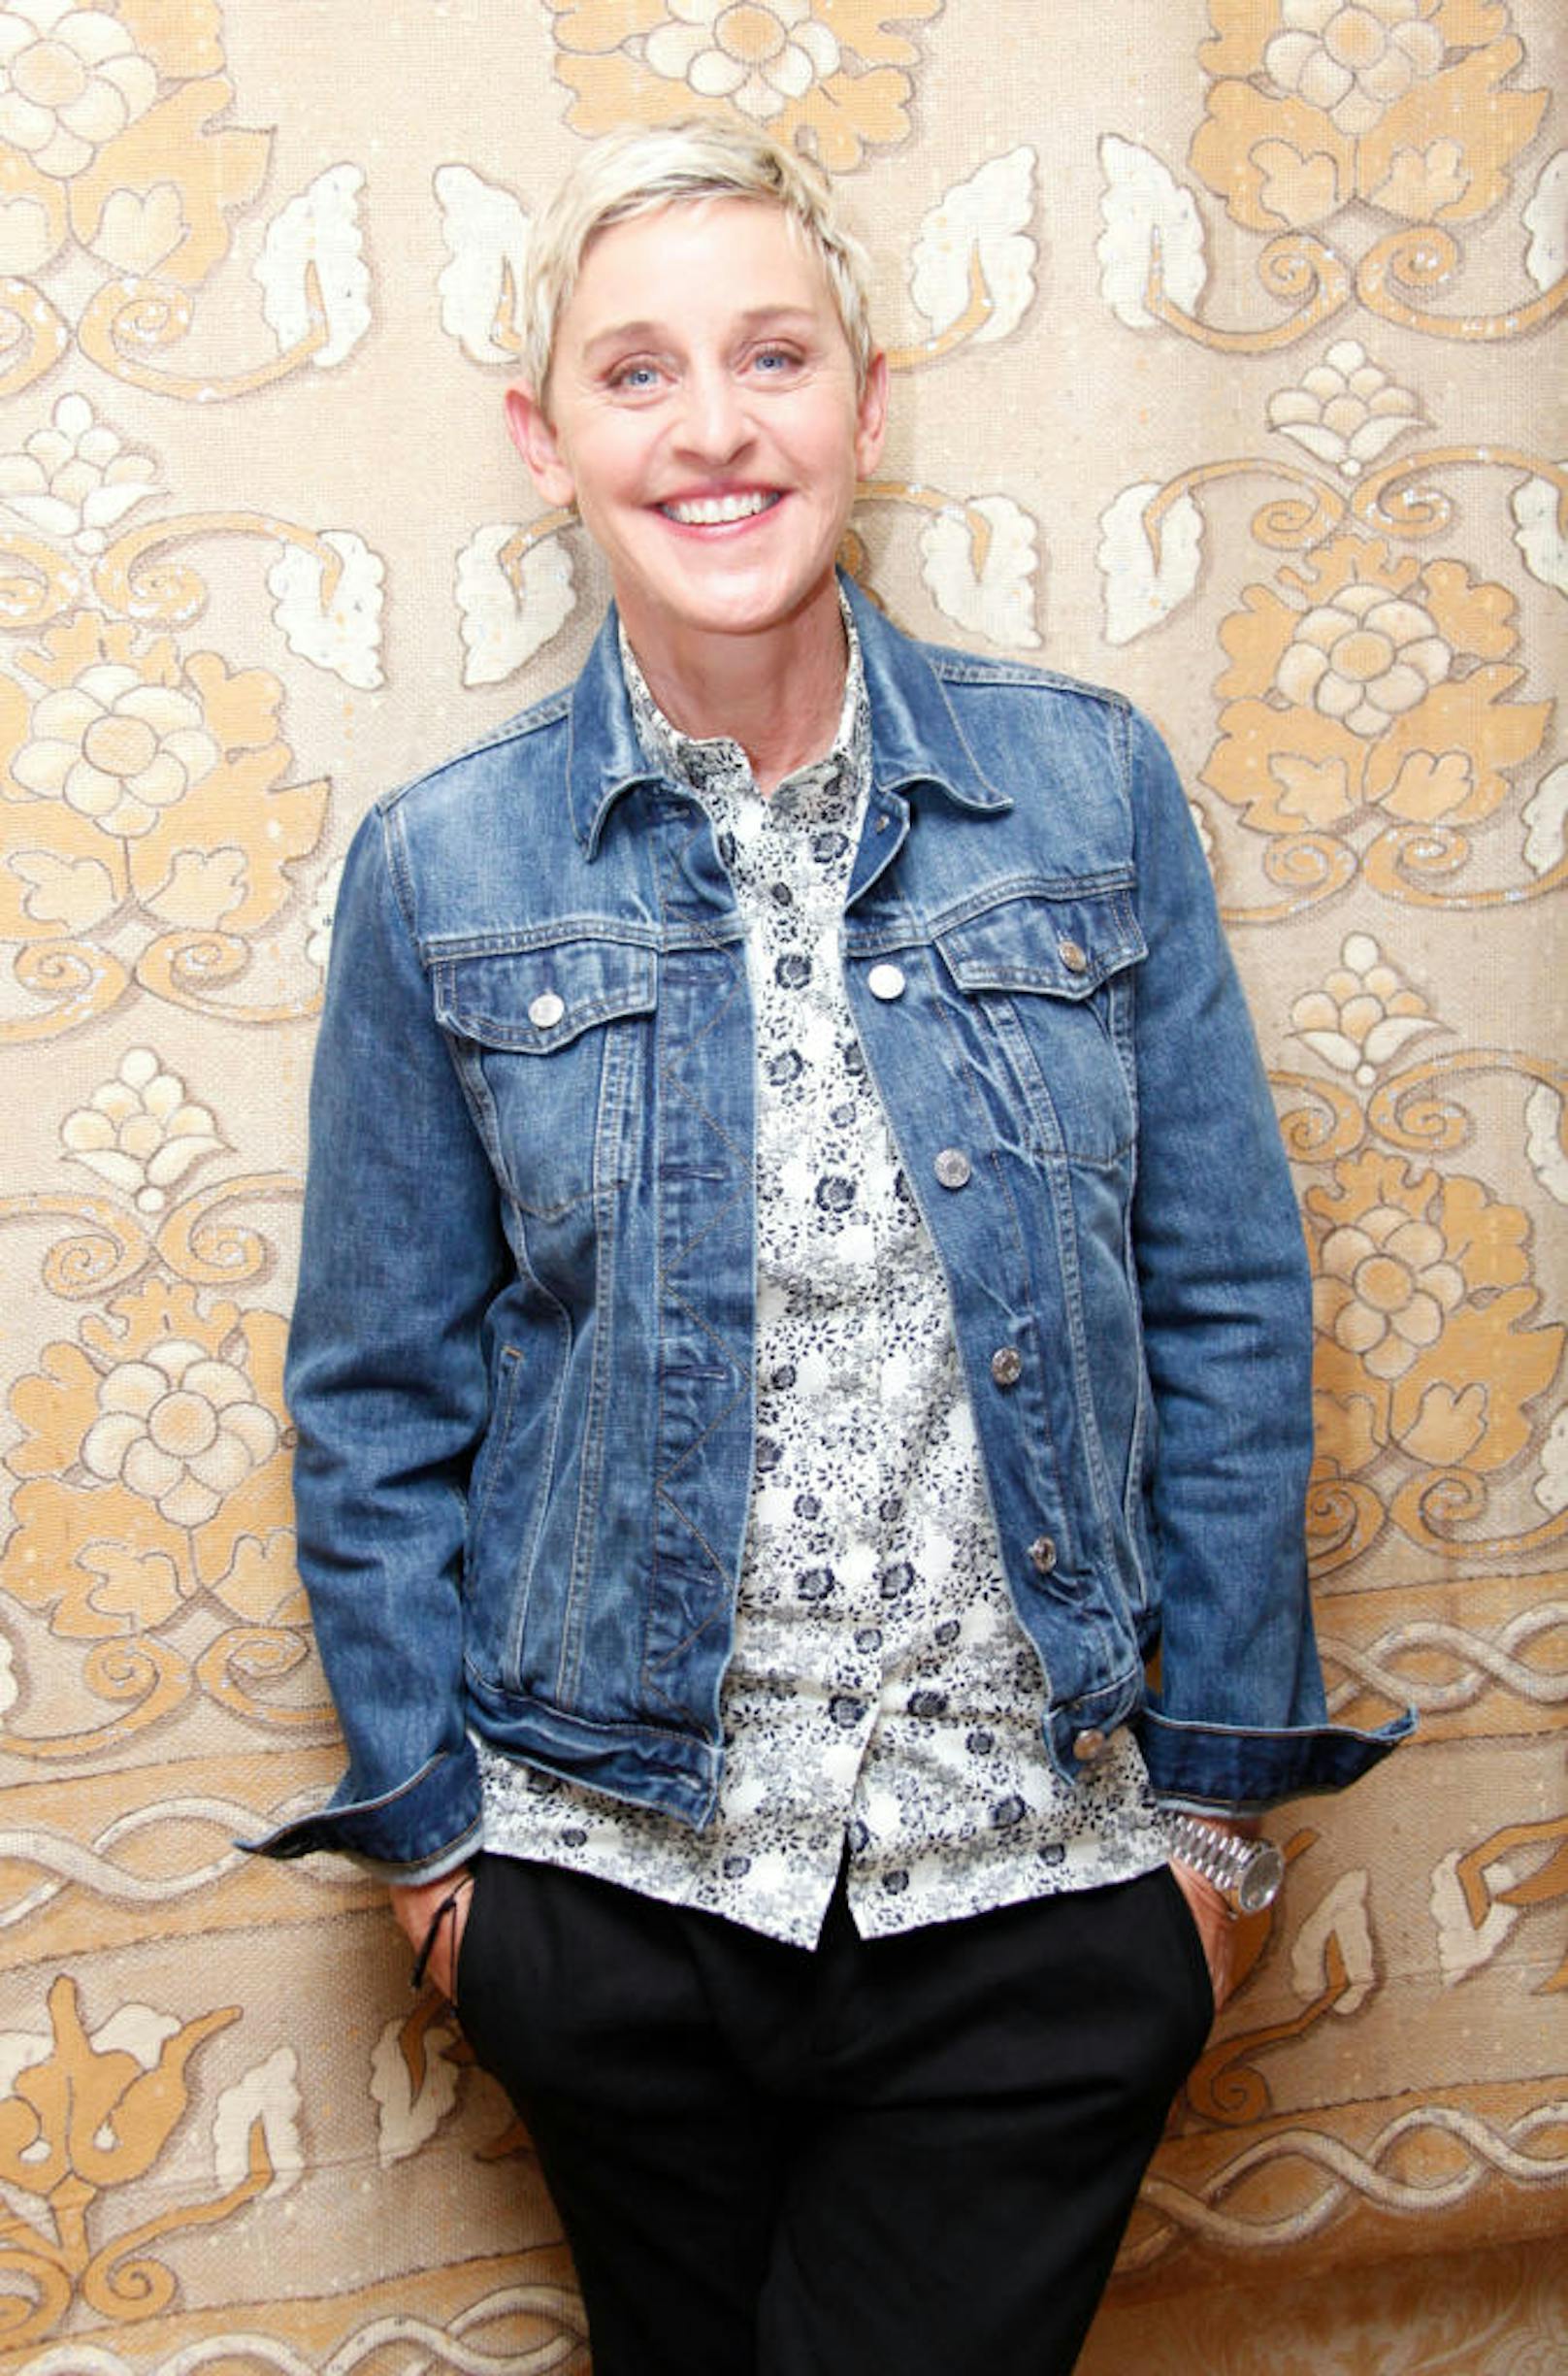 Ellen DeGeneres in Beverly Hills.